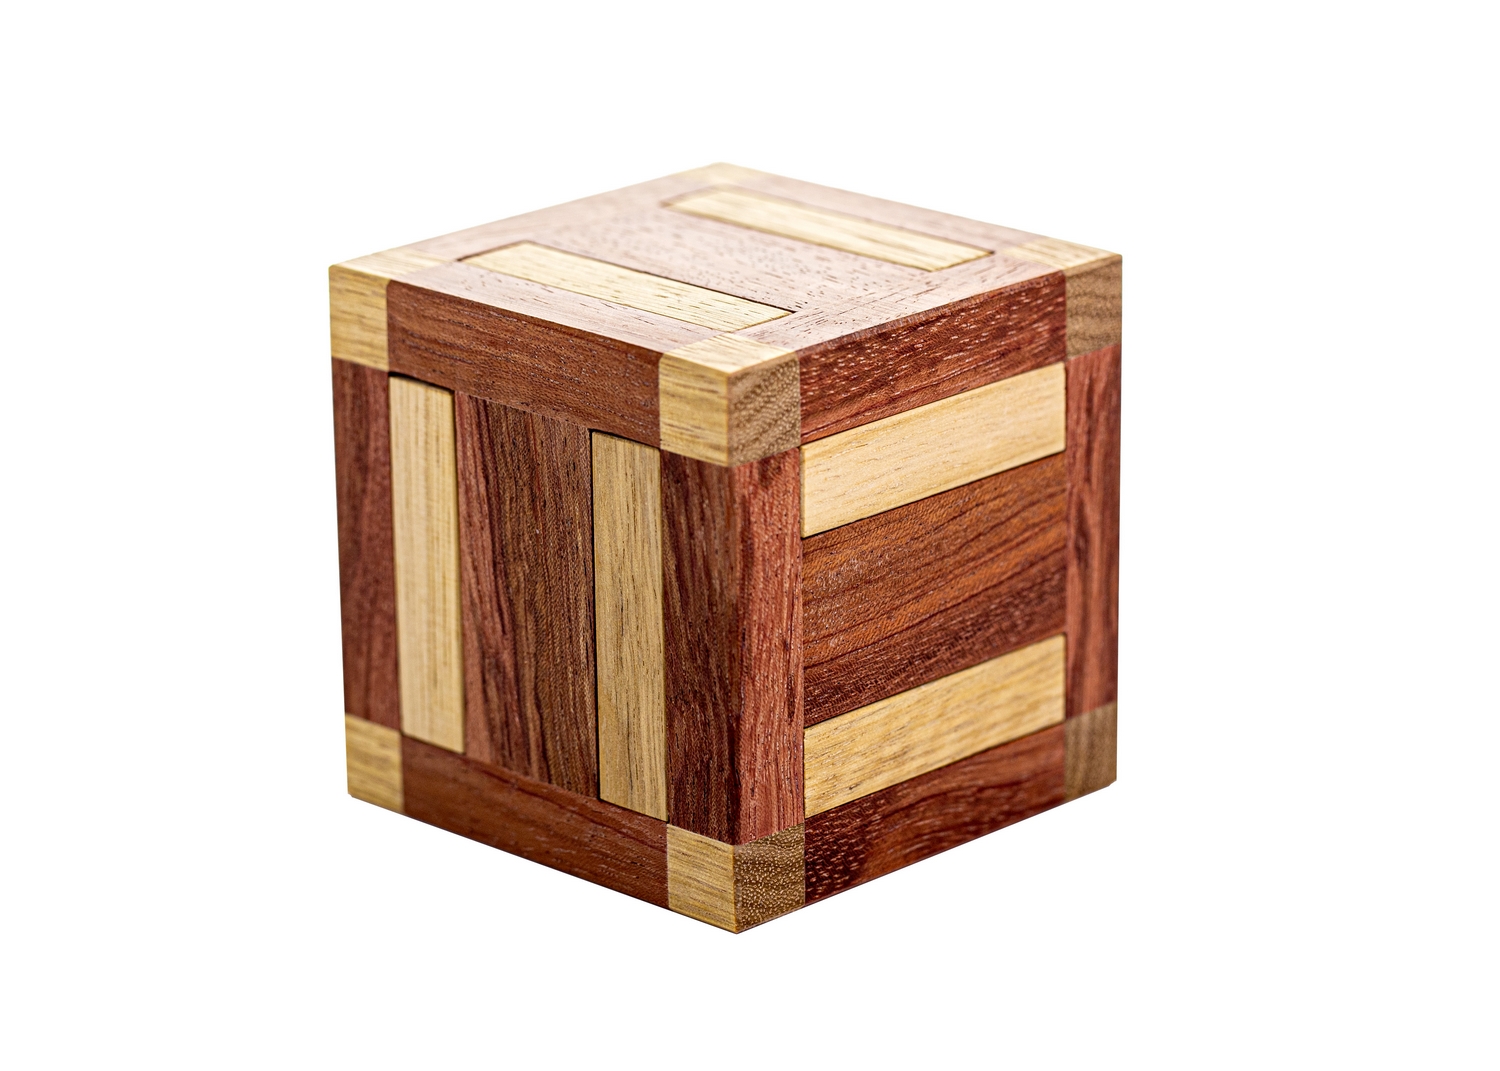 Parallel Burr Cube #2